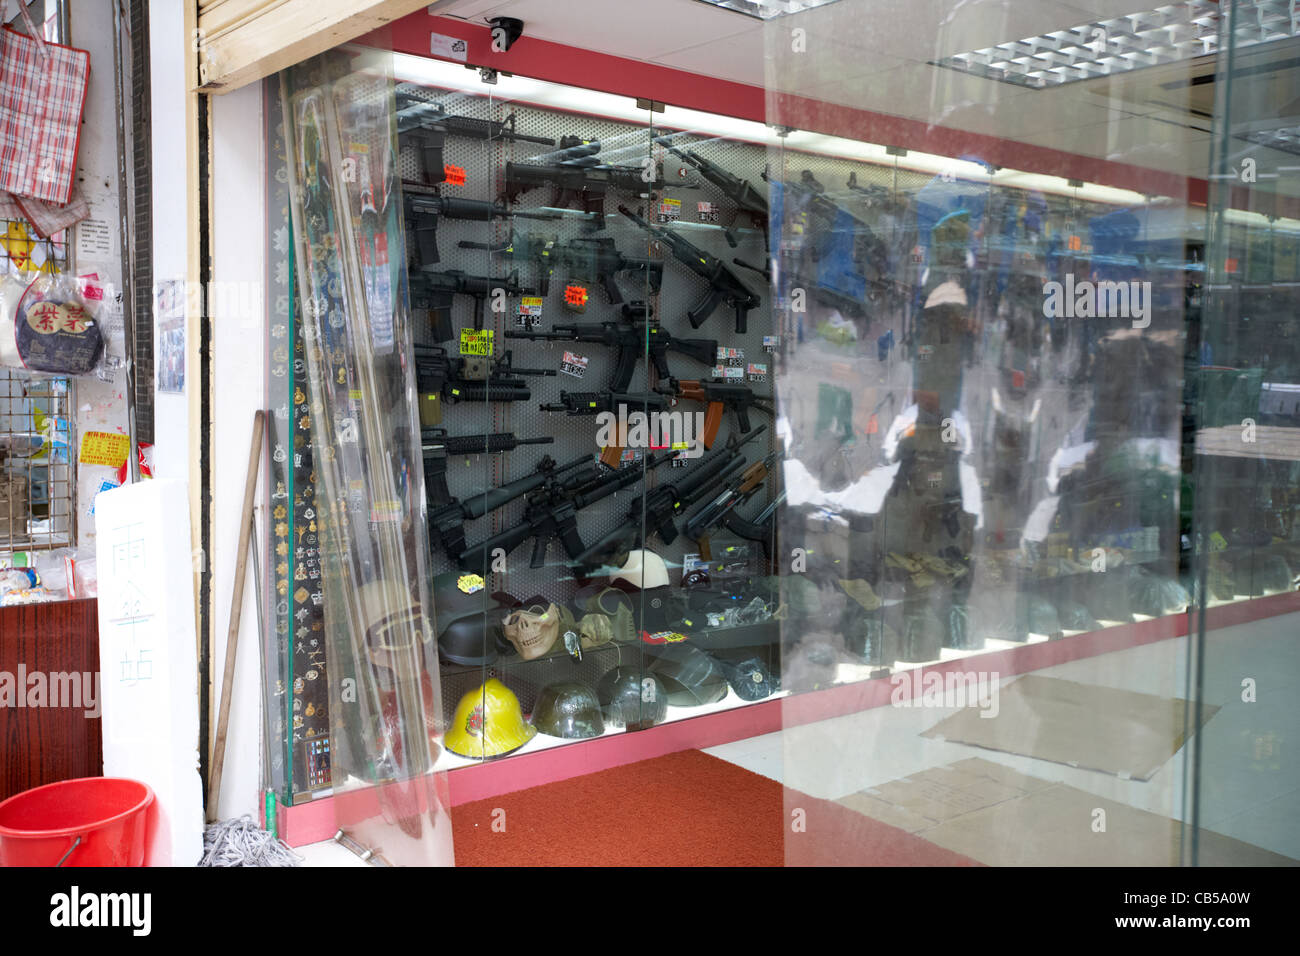 Magasin qui vend des répliques d'armes à feu doux de l'air dans le district de Mong Kok Kowloon Hong Kong région administrative spéciale de Chine Banque D'Images